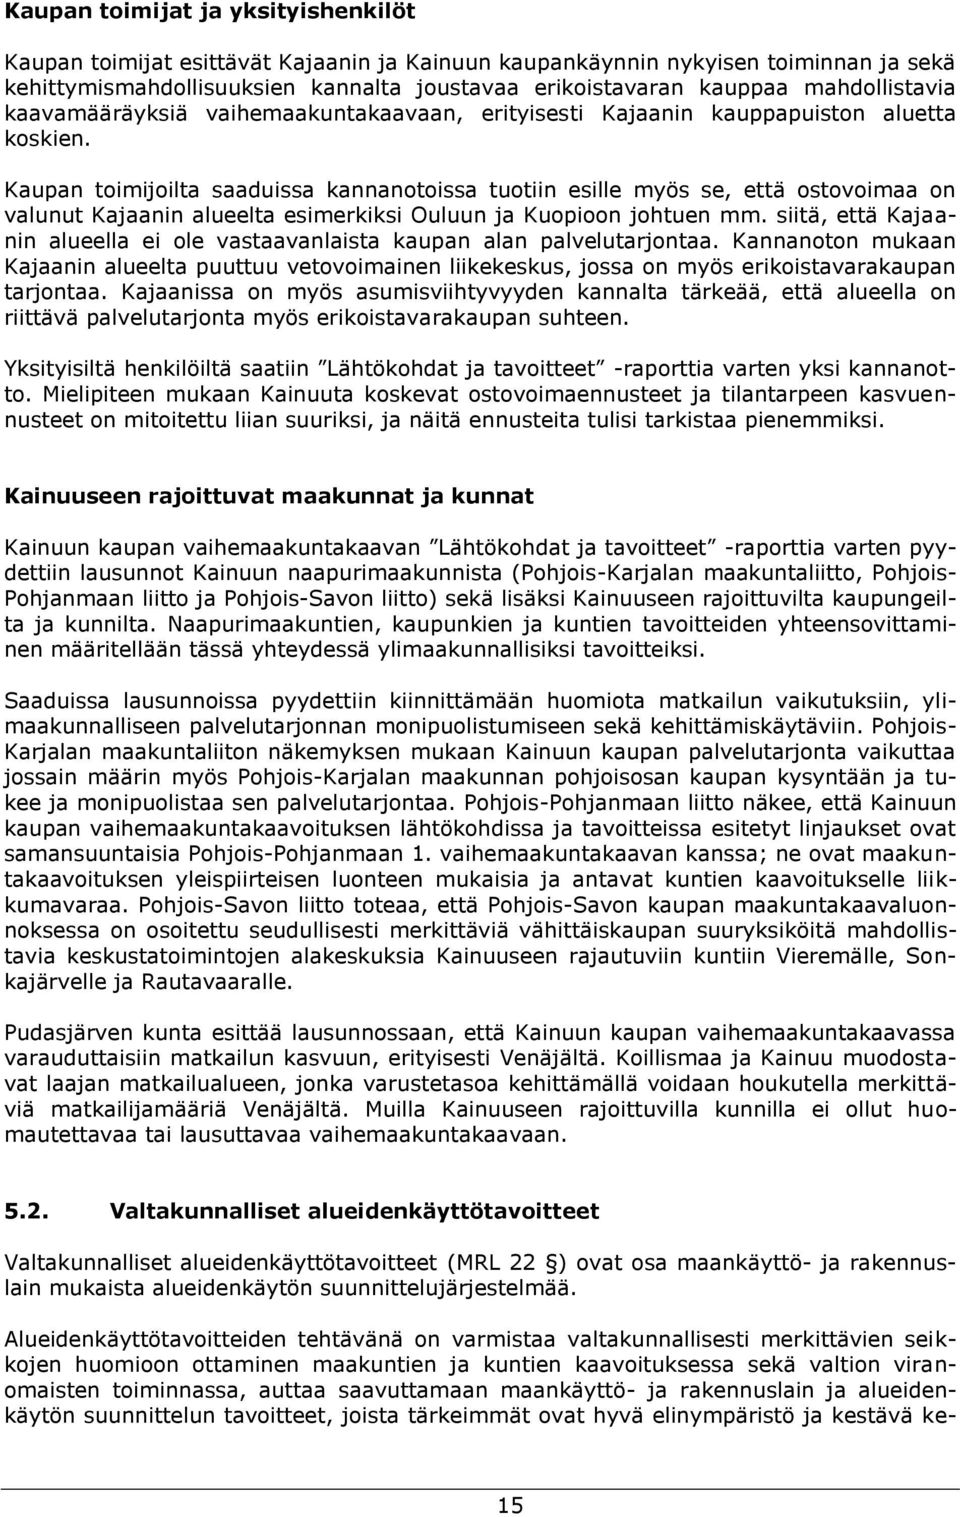 Kaupan toimijoilta saaduissa kannanotoissa tuotiin esille myös se, että ostovoimaa on valunut Kajaanin alueelta esimerkiksi Ouluun ja Kuopioon johtuen mm.